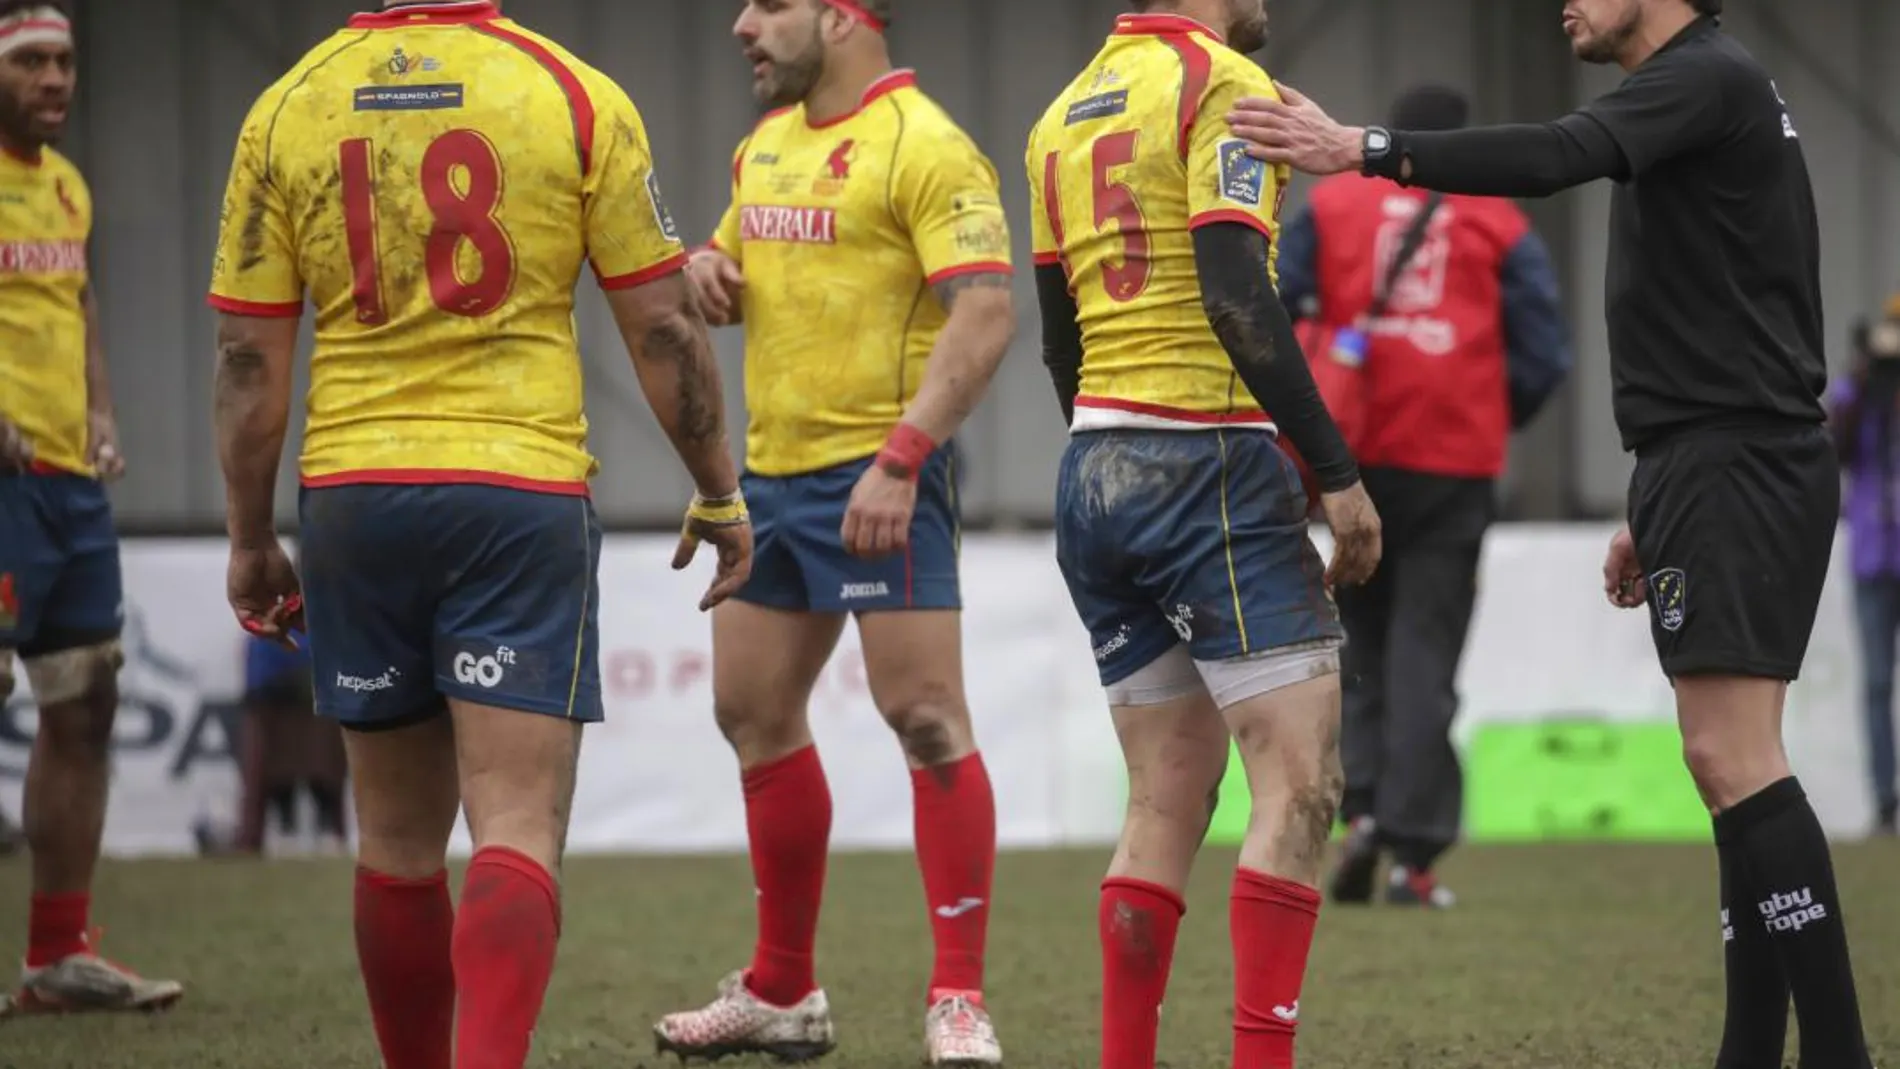 Imagen del España Bélgica de Rugby jugado el pasado 18 de marzo. Ap